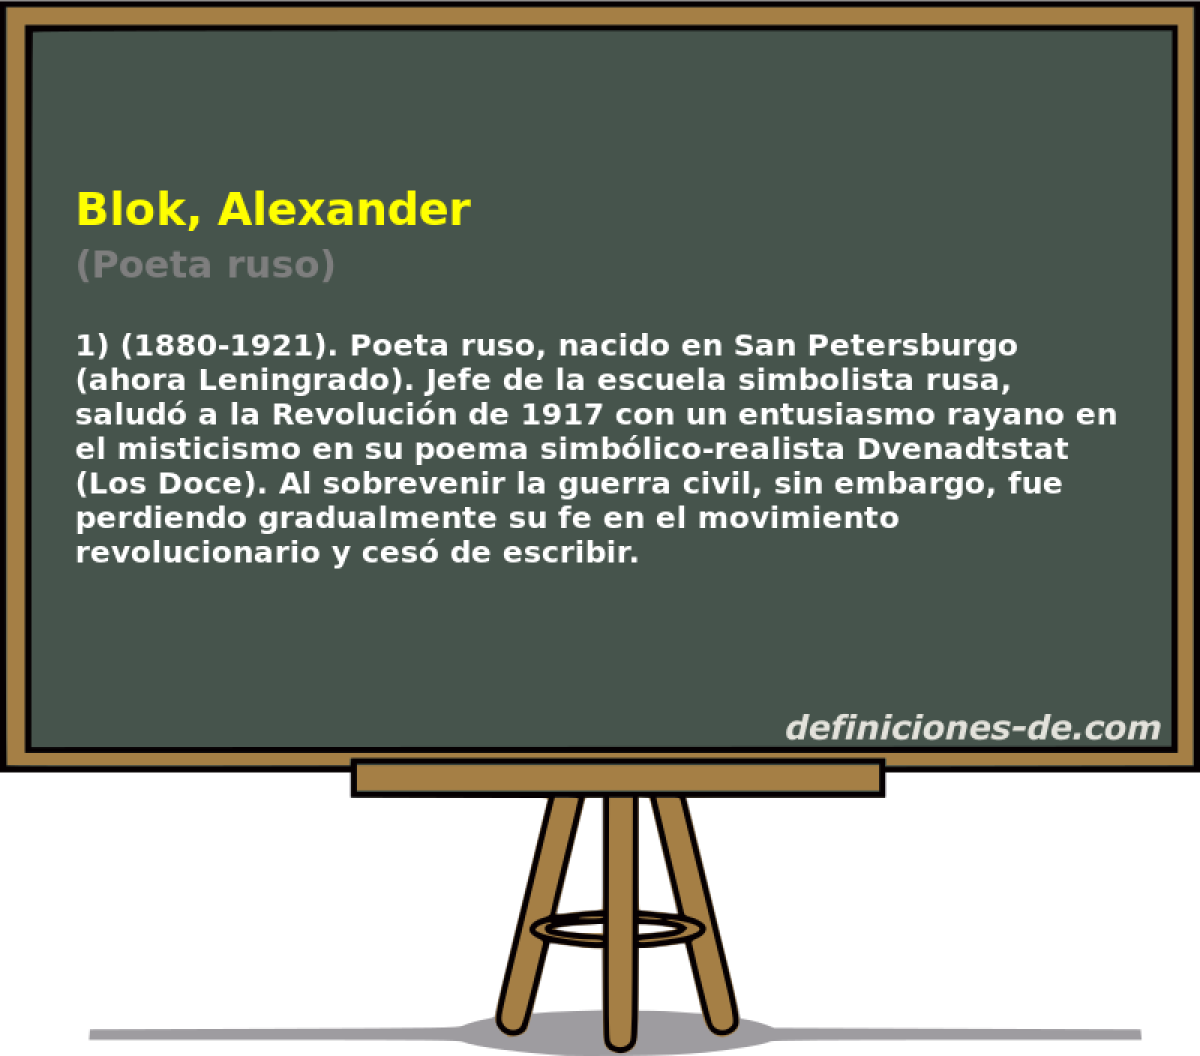 Blok, Alexander (Poeta ruso)